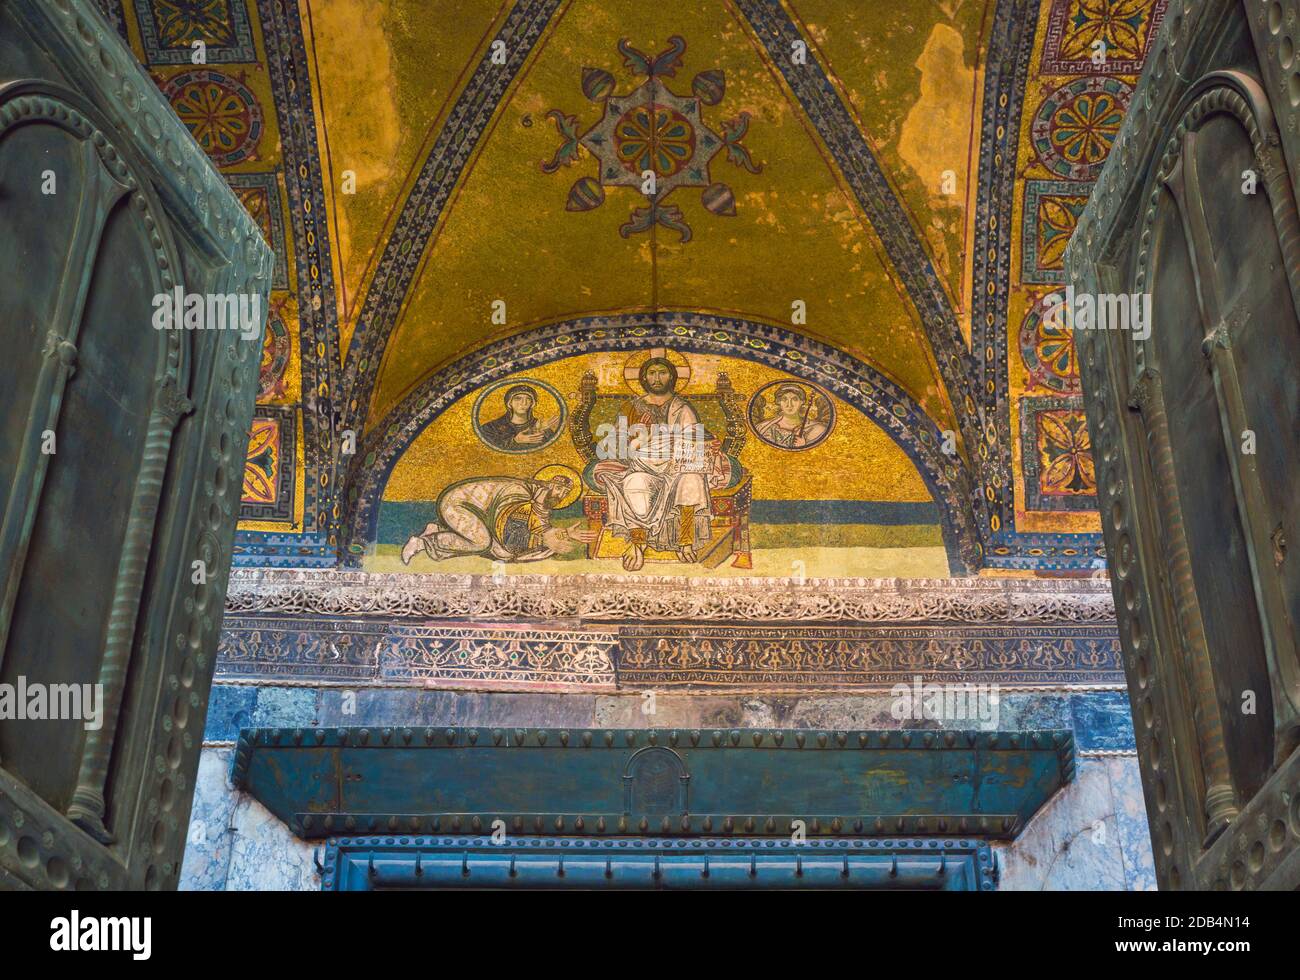 Istanbul, Turquie. Sainte-Sophie. La porte impériale. La mosaïque au-dessus de la porte, datant du 9-10ème siècle, montre Christ Pantocrator avec un empereur Banque D'Images